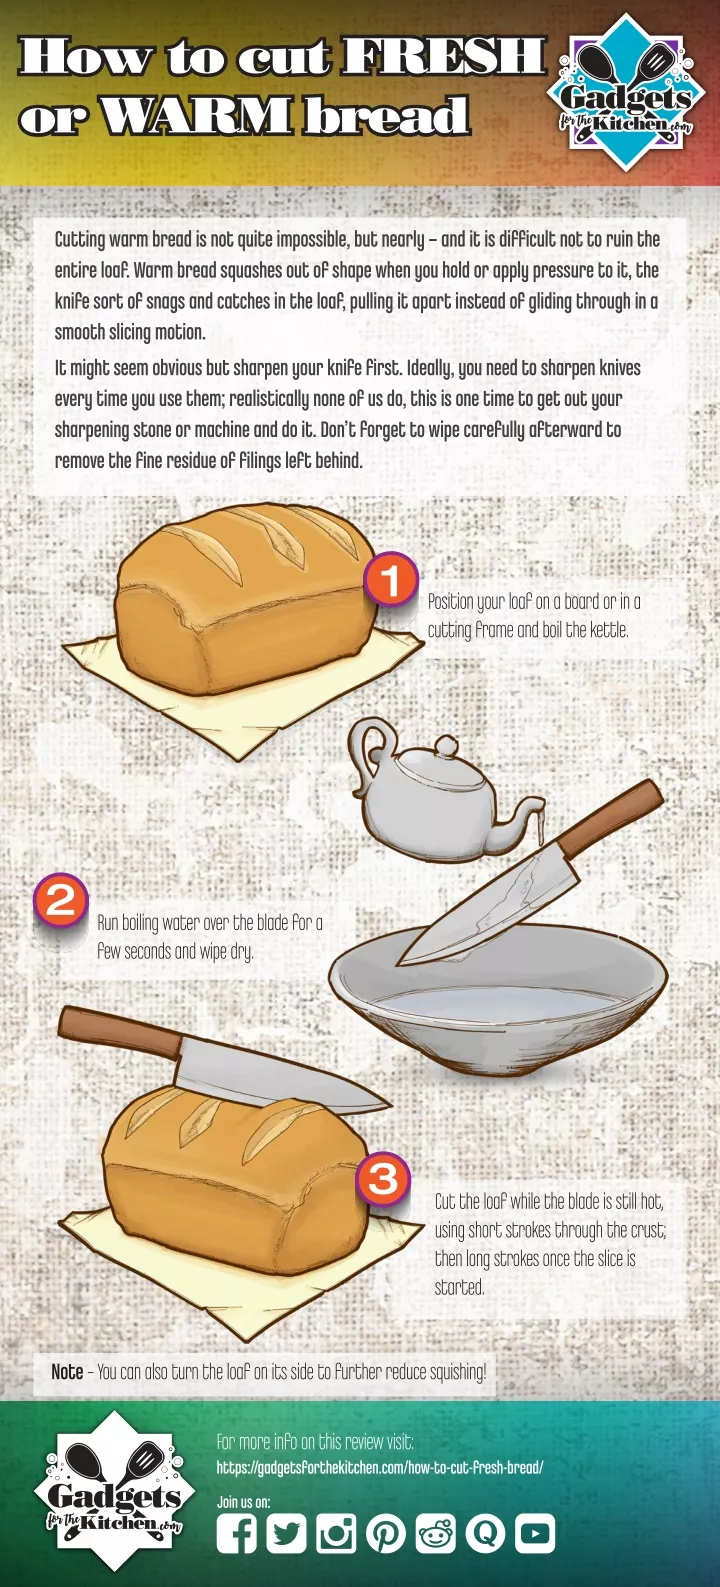 how to cut fresh or warm bread or warm bread